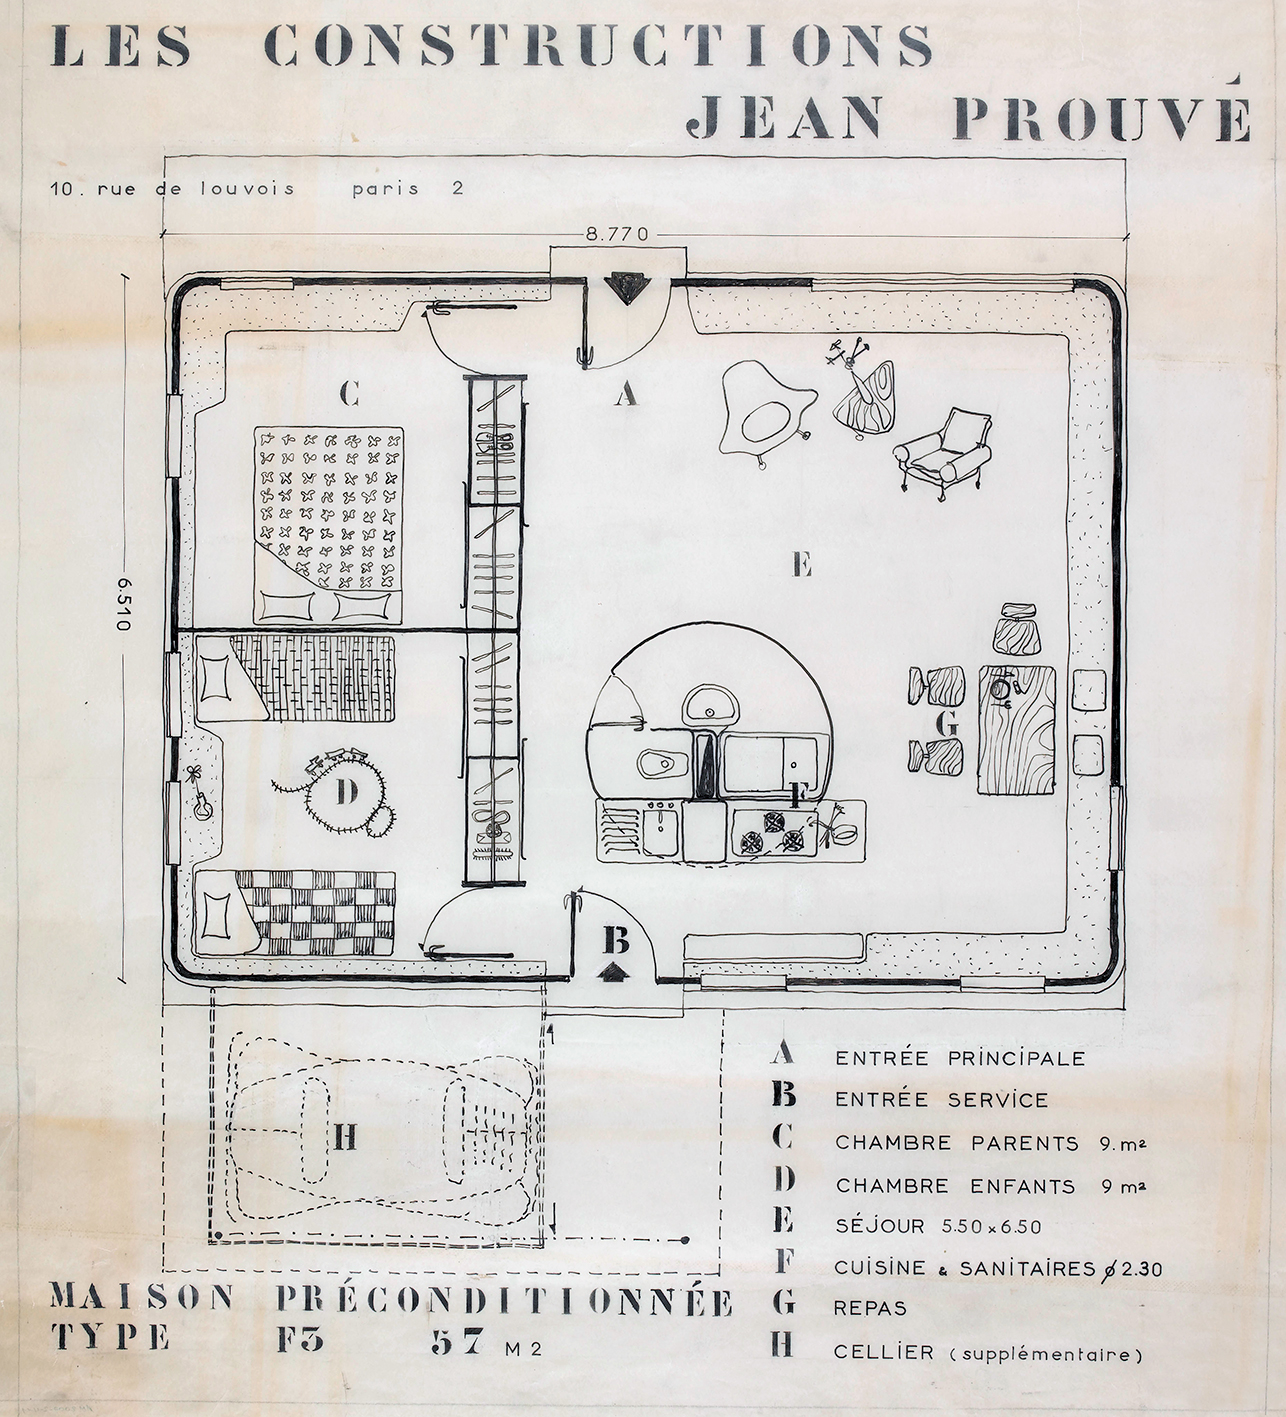 Les Constructions Jean Prouvé. « Maison préconditionnée type F3 57m2 ». Plan de distribution, variante avec trois pièces et cellier, c. 1957.